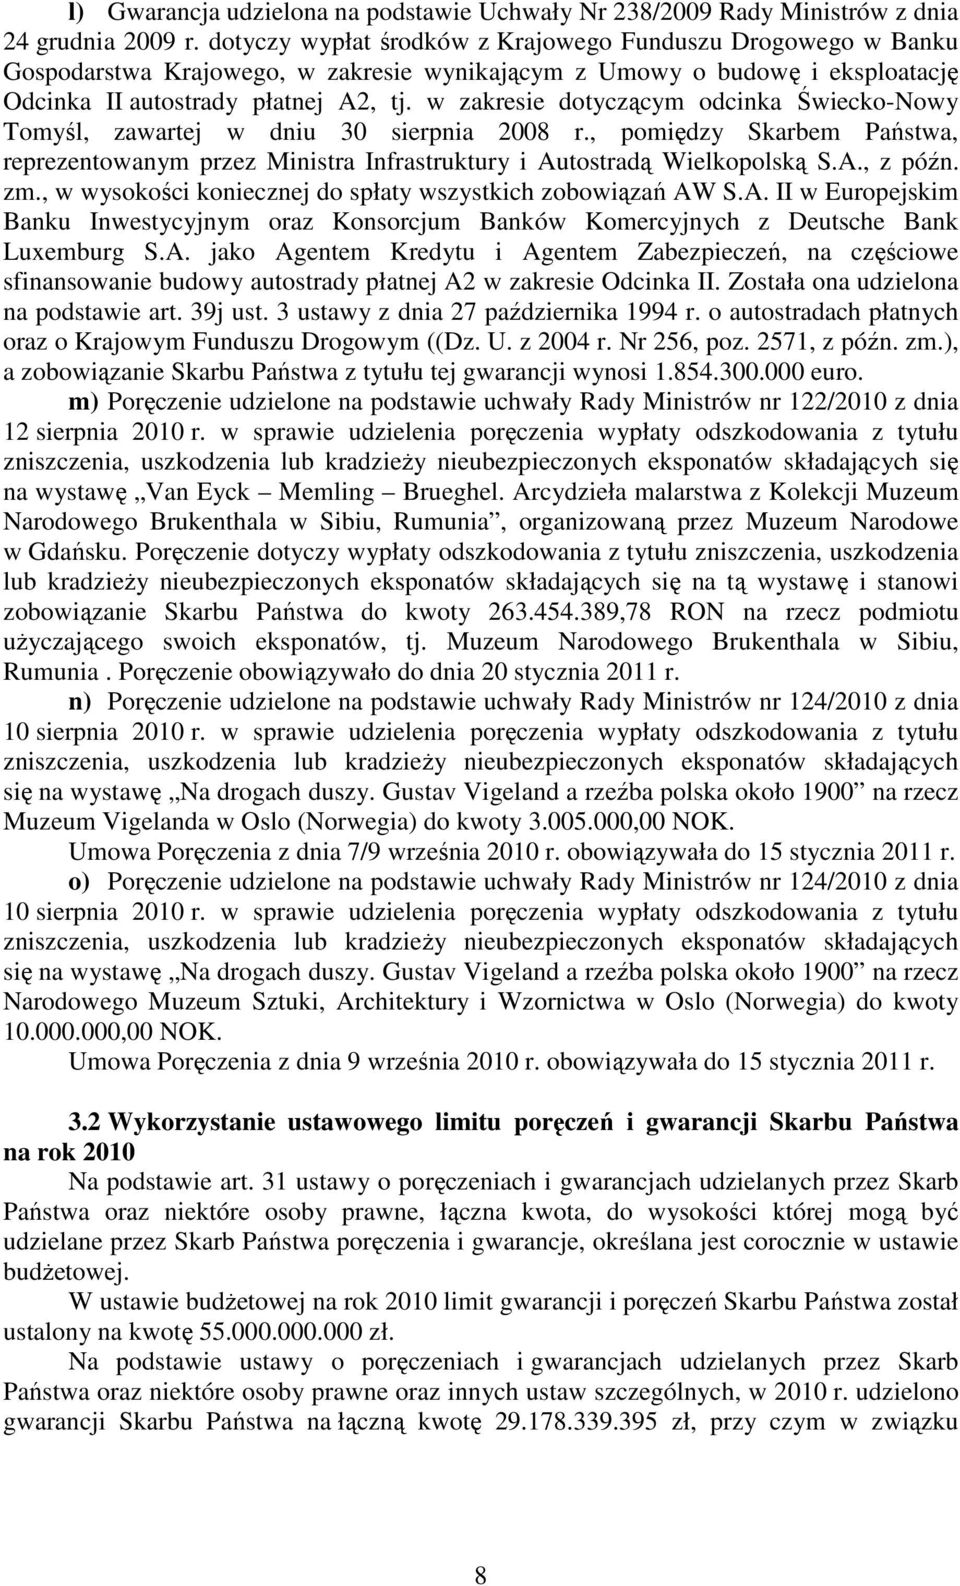 w zakresie dotyczącym odcinka Świecko-Nowy Tomyśl, zawartej w dniu 30 sierpnia 2008 r., pomiędzy Skarbem Państwa, reprezentowanym przez Ministra Infrastruktury i Autostradą Wielkopolską S.A., z późn.